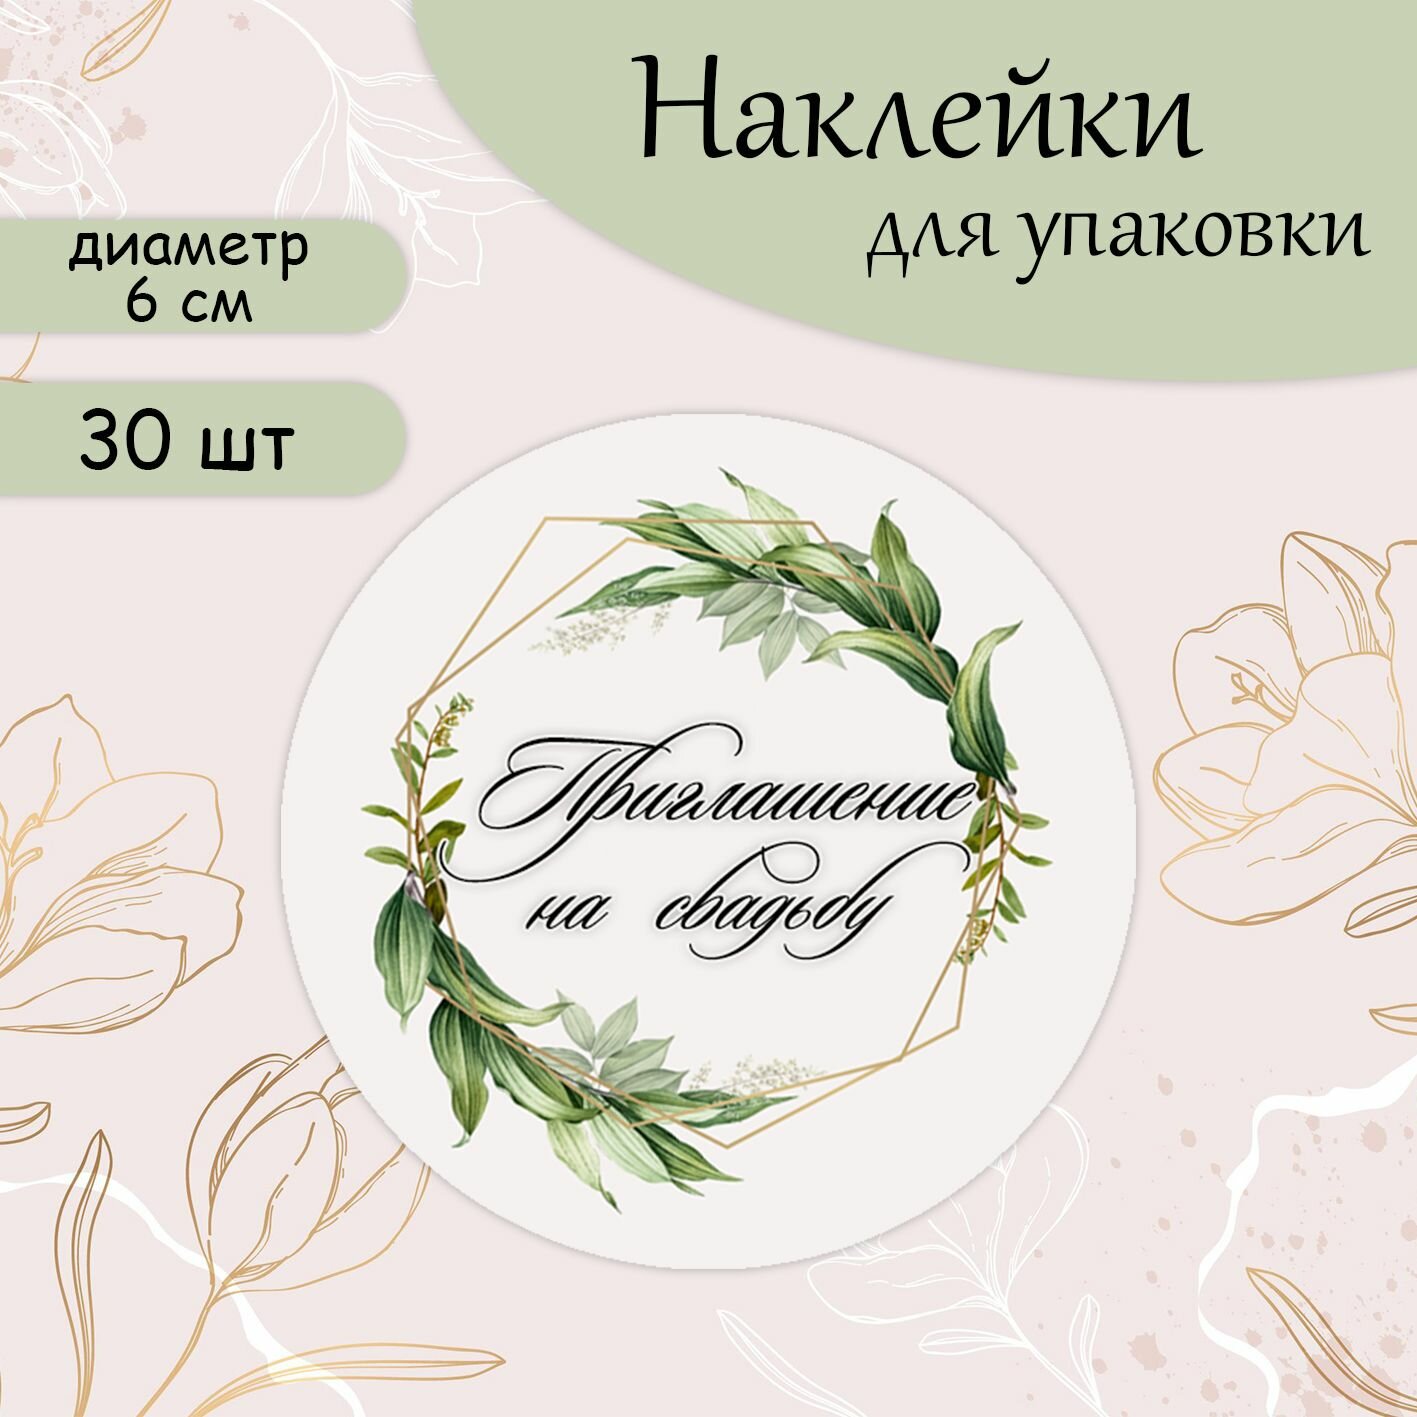 Наклейки-стикеры круглые приглашение на свадьбу, d 6 cм (30 шт)